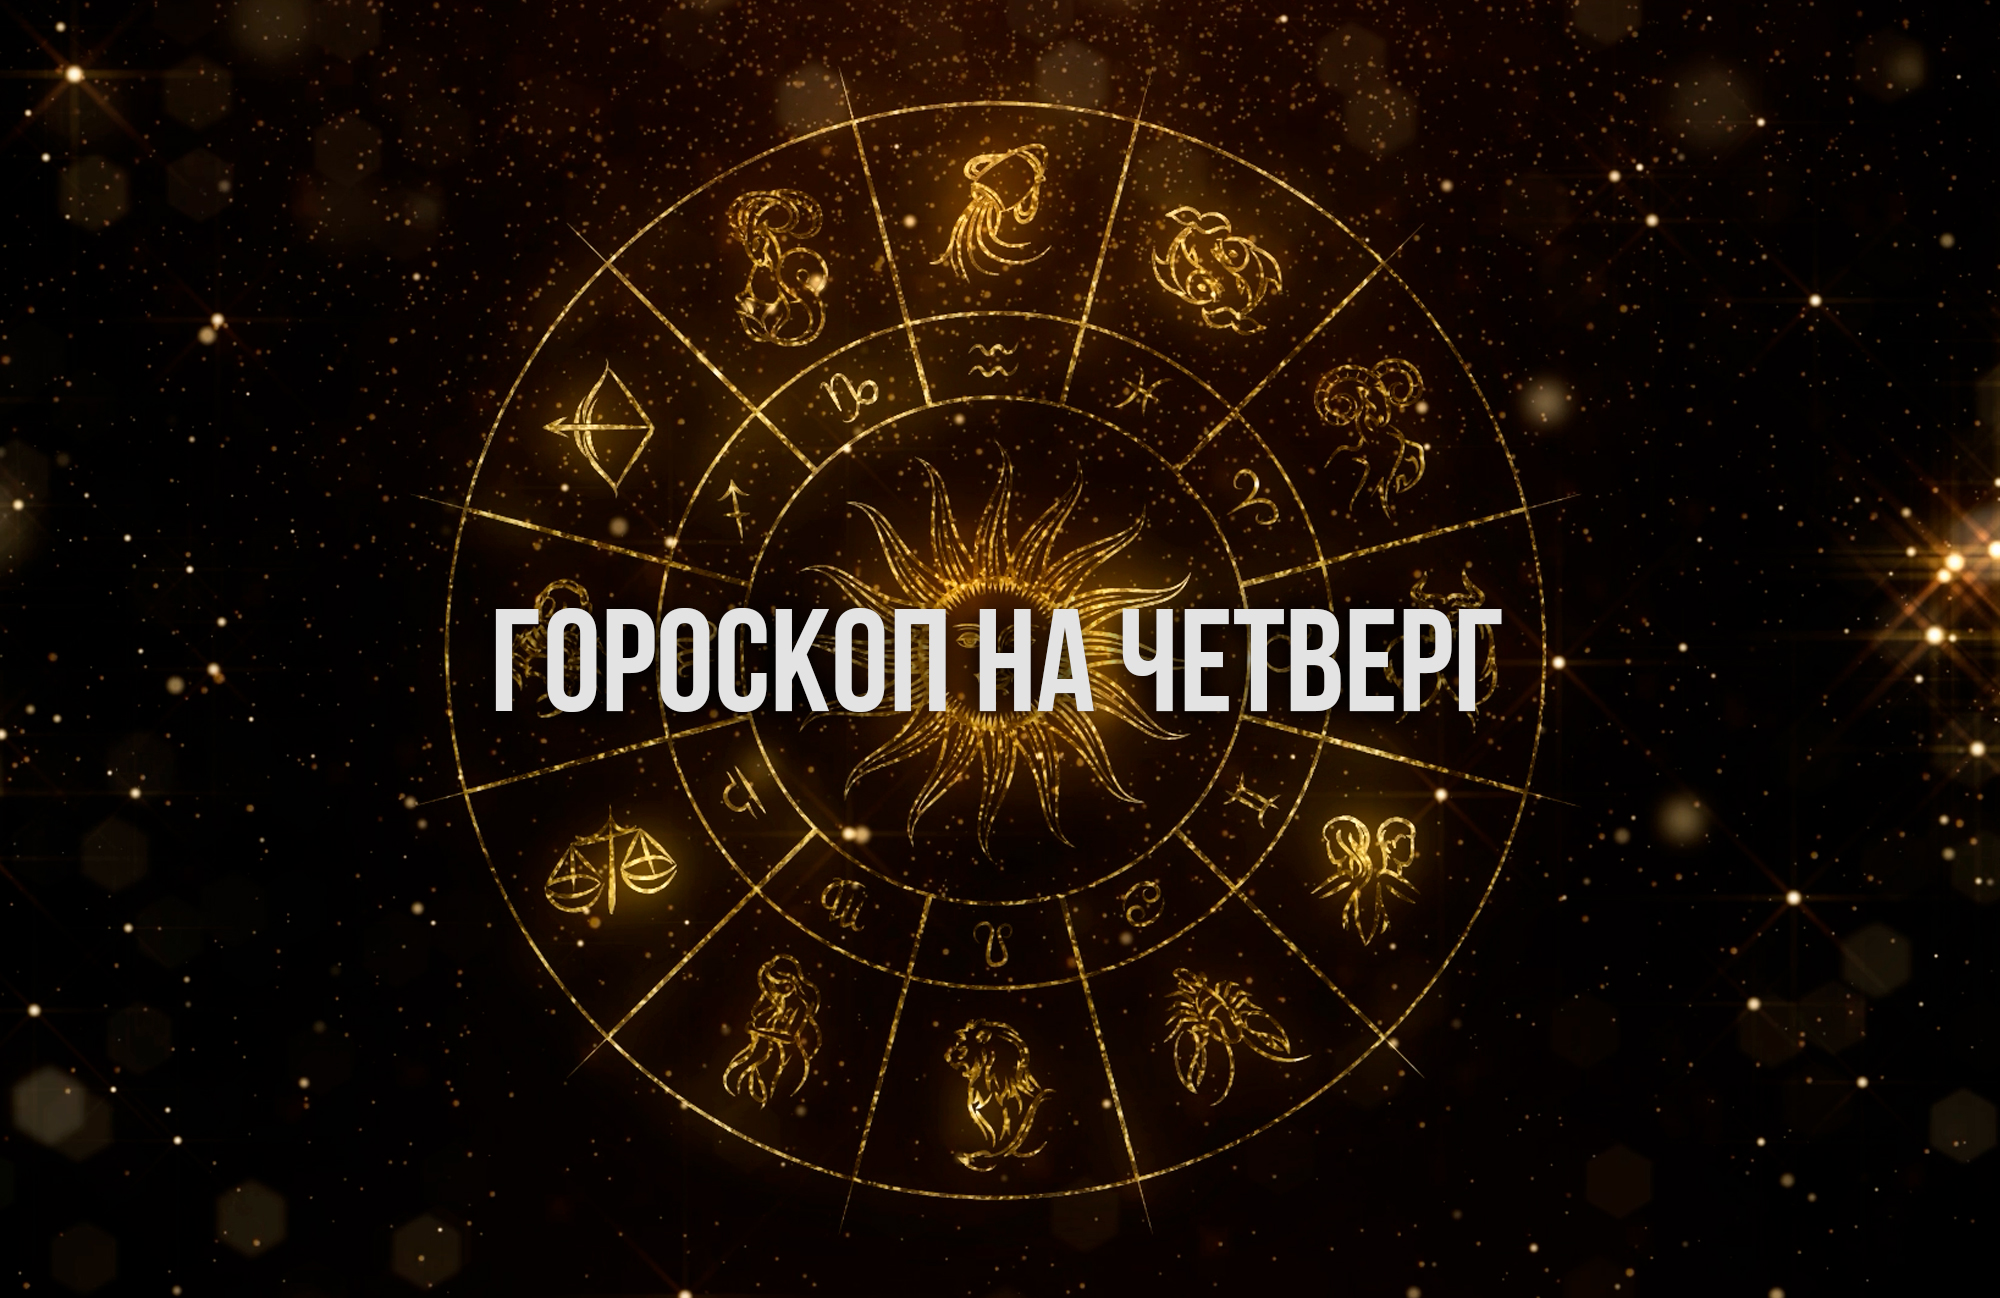 Дар красноречия у Тельцов будет на высоком уровне, а у Козерогов сегодня высокий уровень энергии  гороскоп на 18 апреля